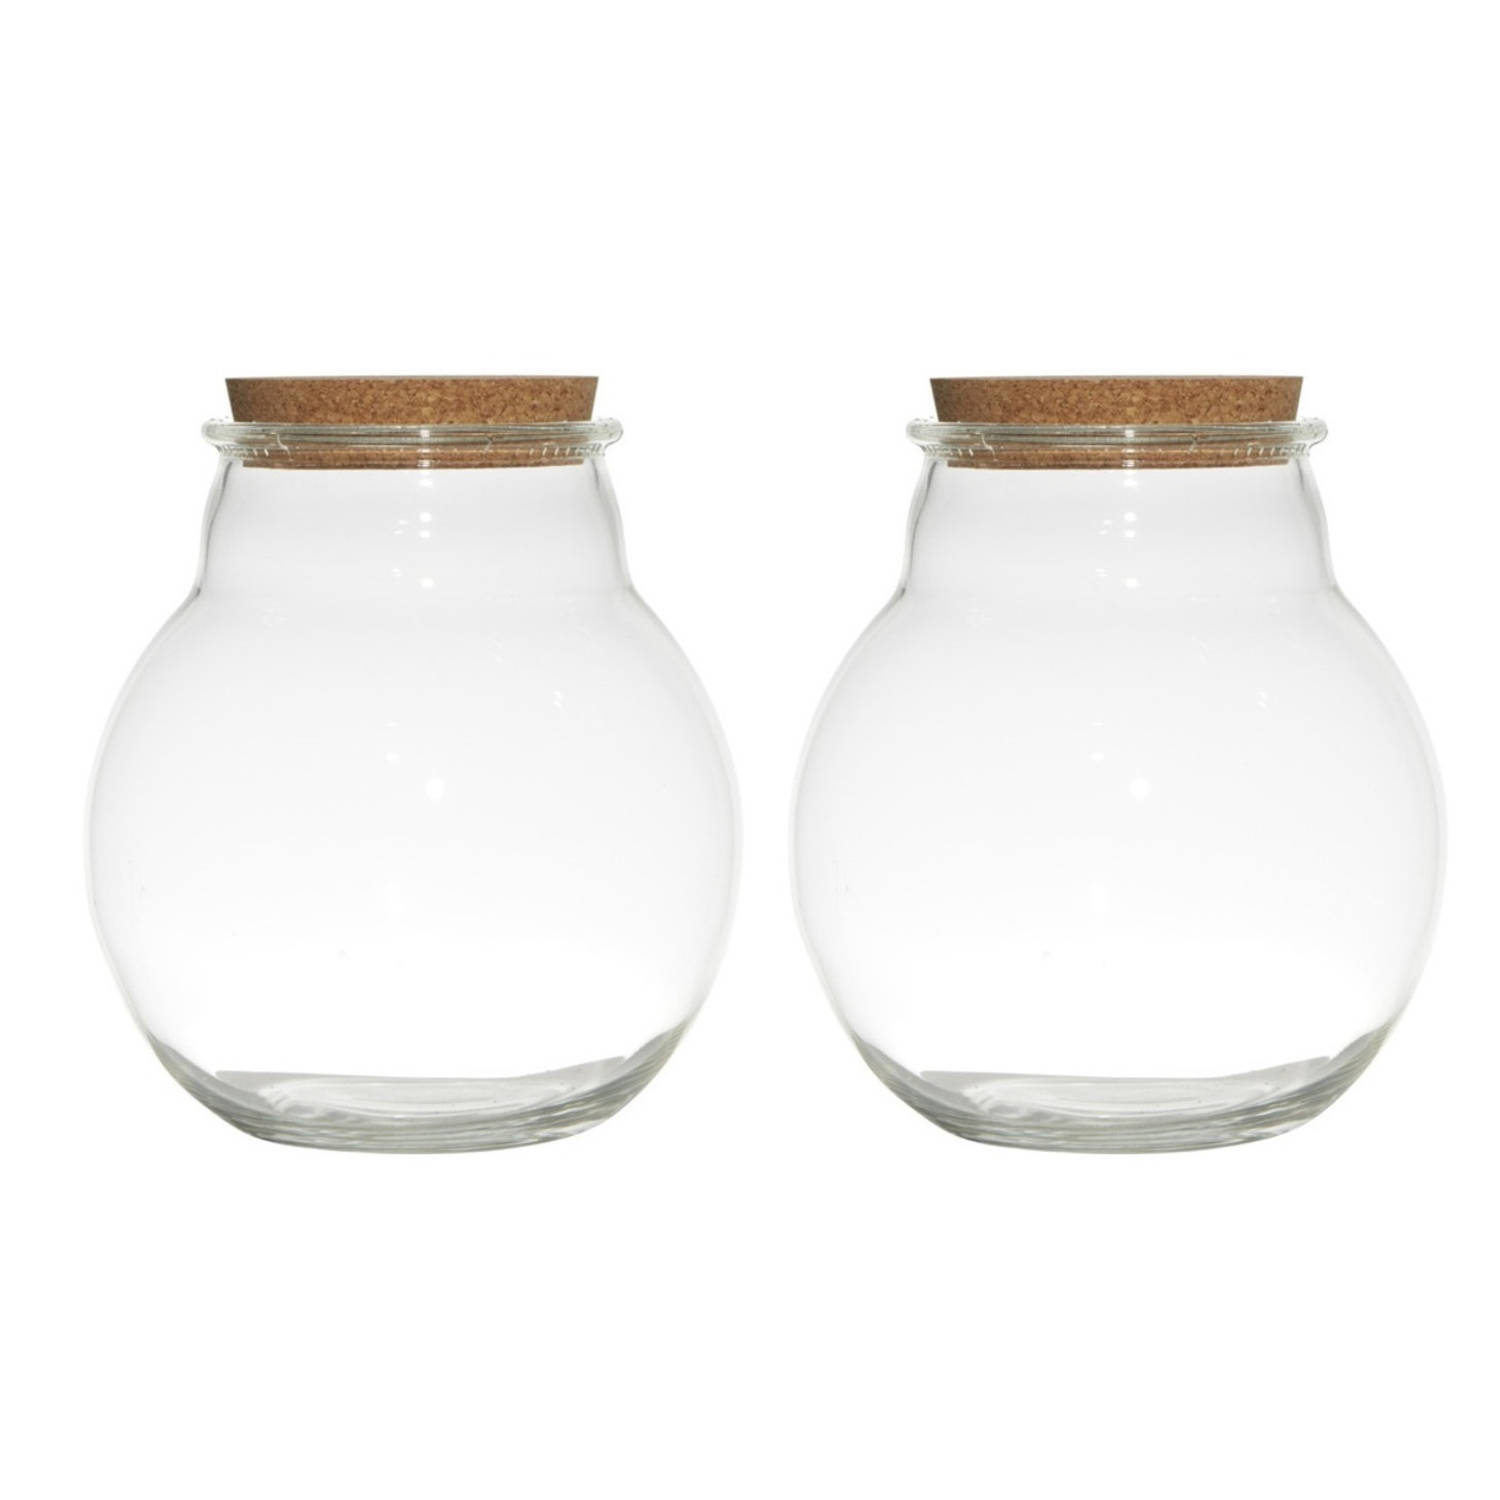 Bellatio Design Set van 2x stuks glazen voorraadpotten/snoeppotten/terrarium vazen van 19 x 21.5 cm met kurk dop - Bewaarpot/Opslagpot